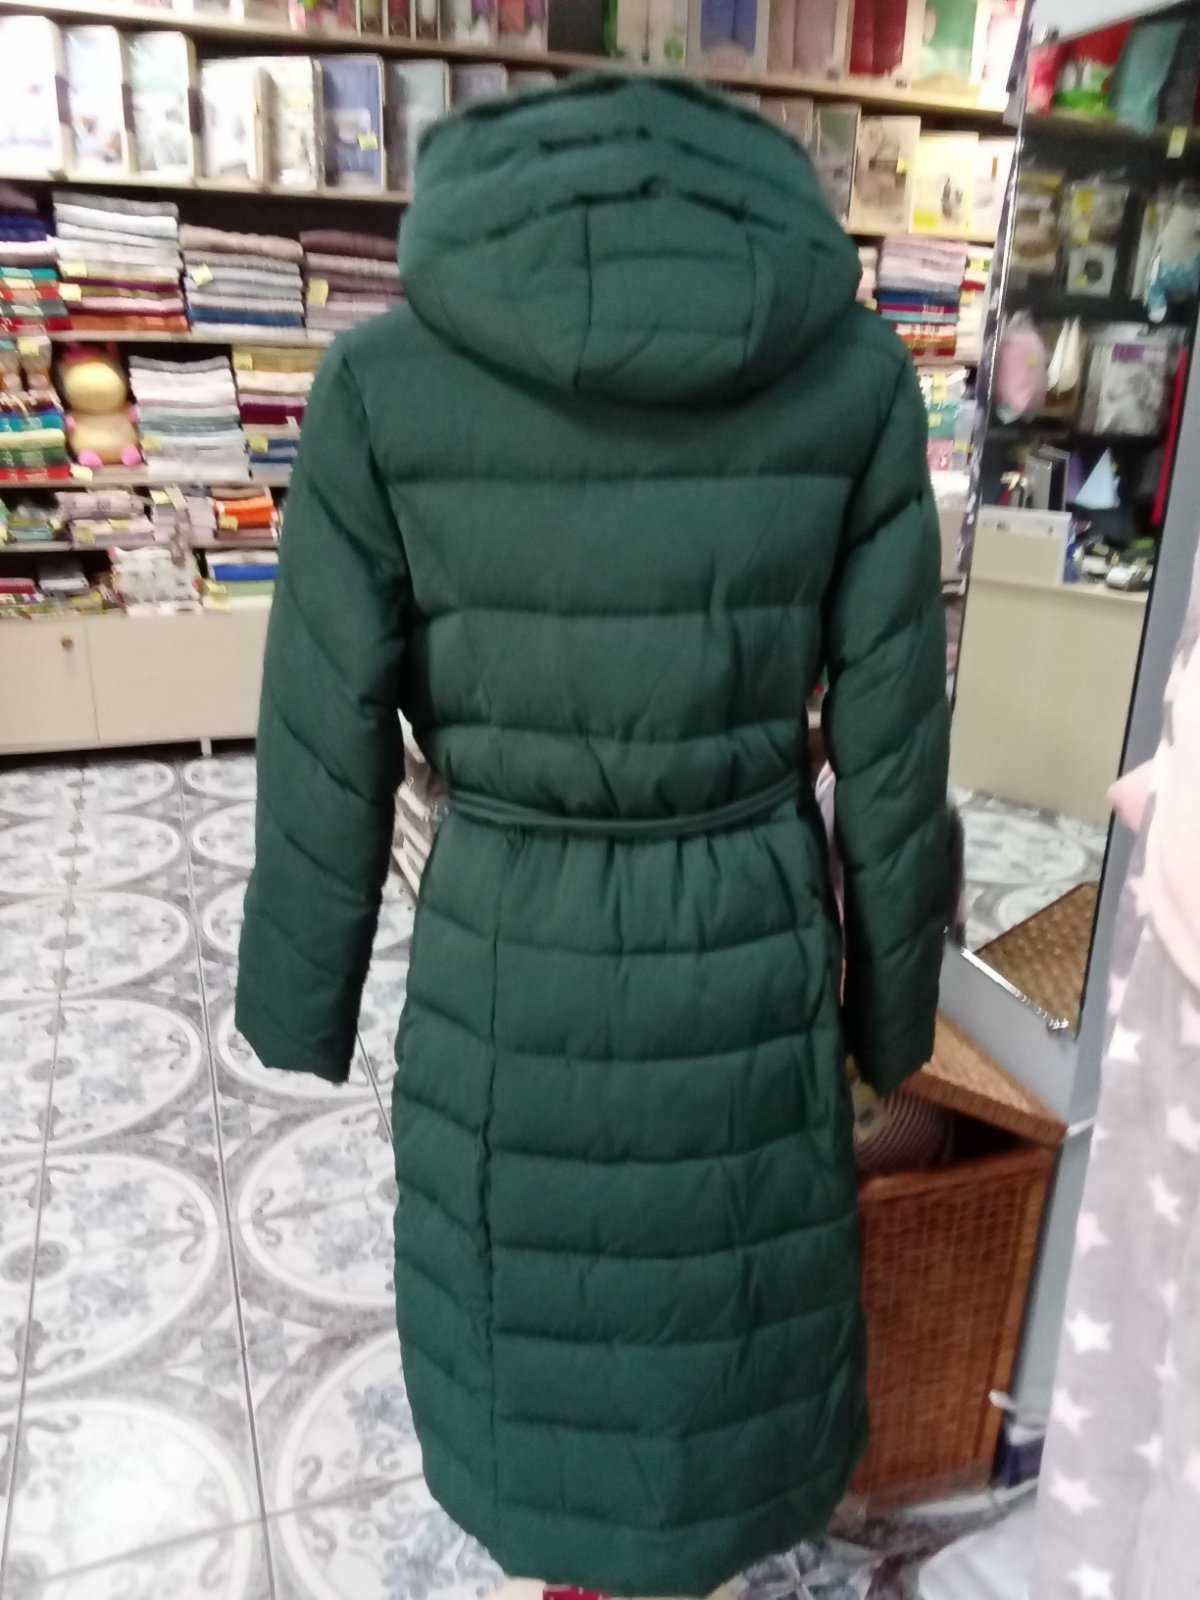 Пальто куртка зимнее теплое изумрудного цвета 54 размер Люкс качество